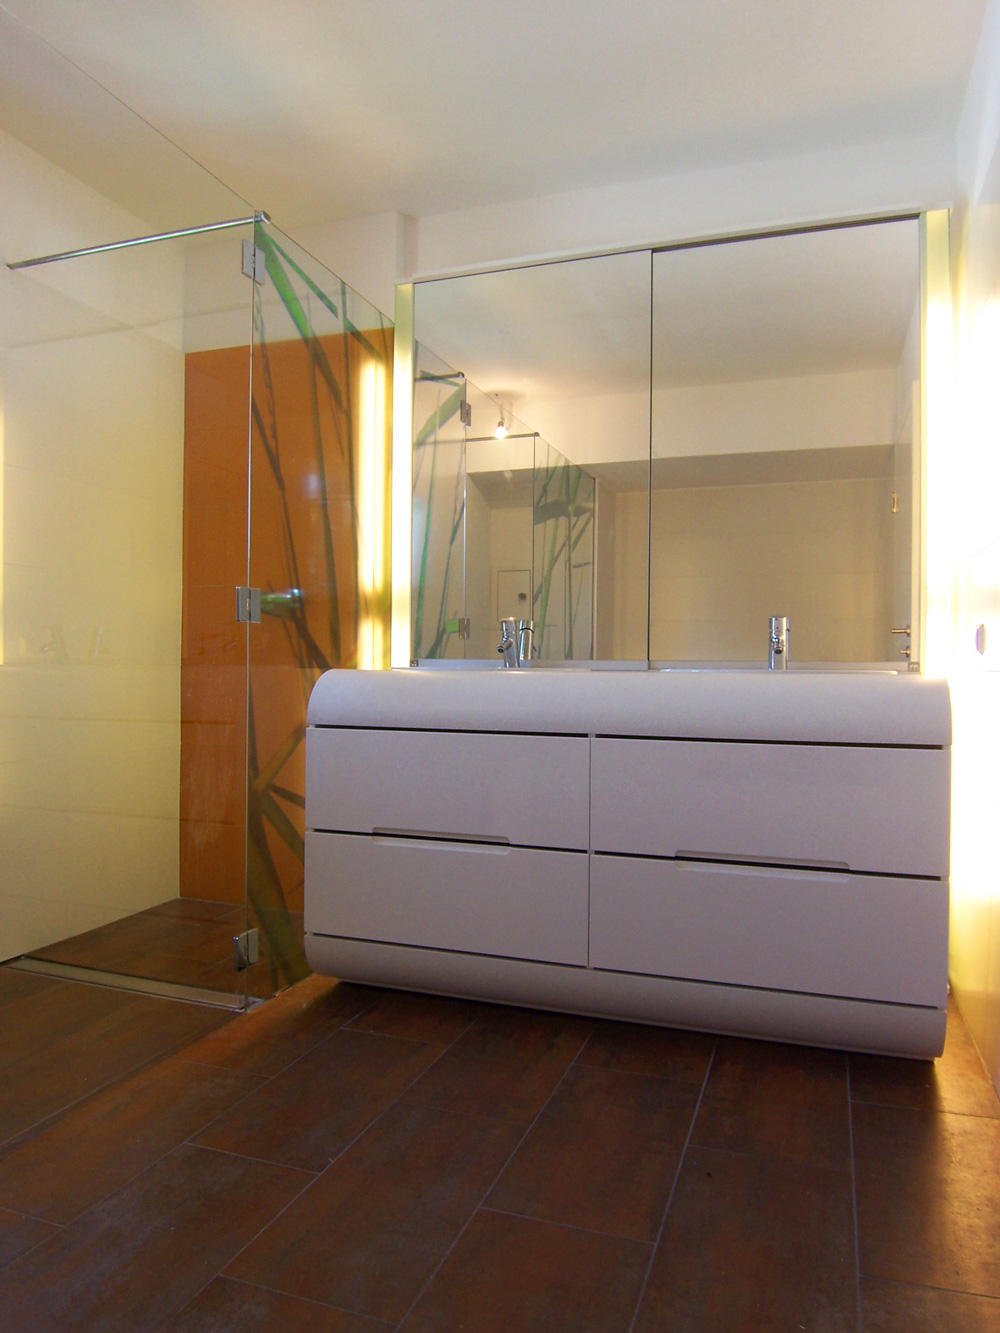 Bild des Bades mit integriertem Möbeldesign (Waschtisch & Dusche) von einem Einfamilienhaus das von Architekten geplant wurde